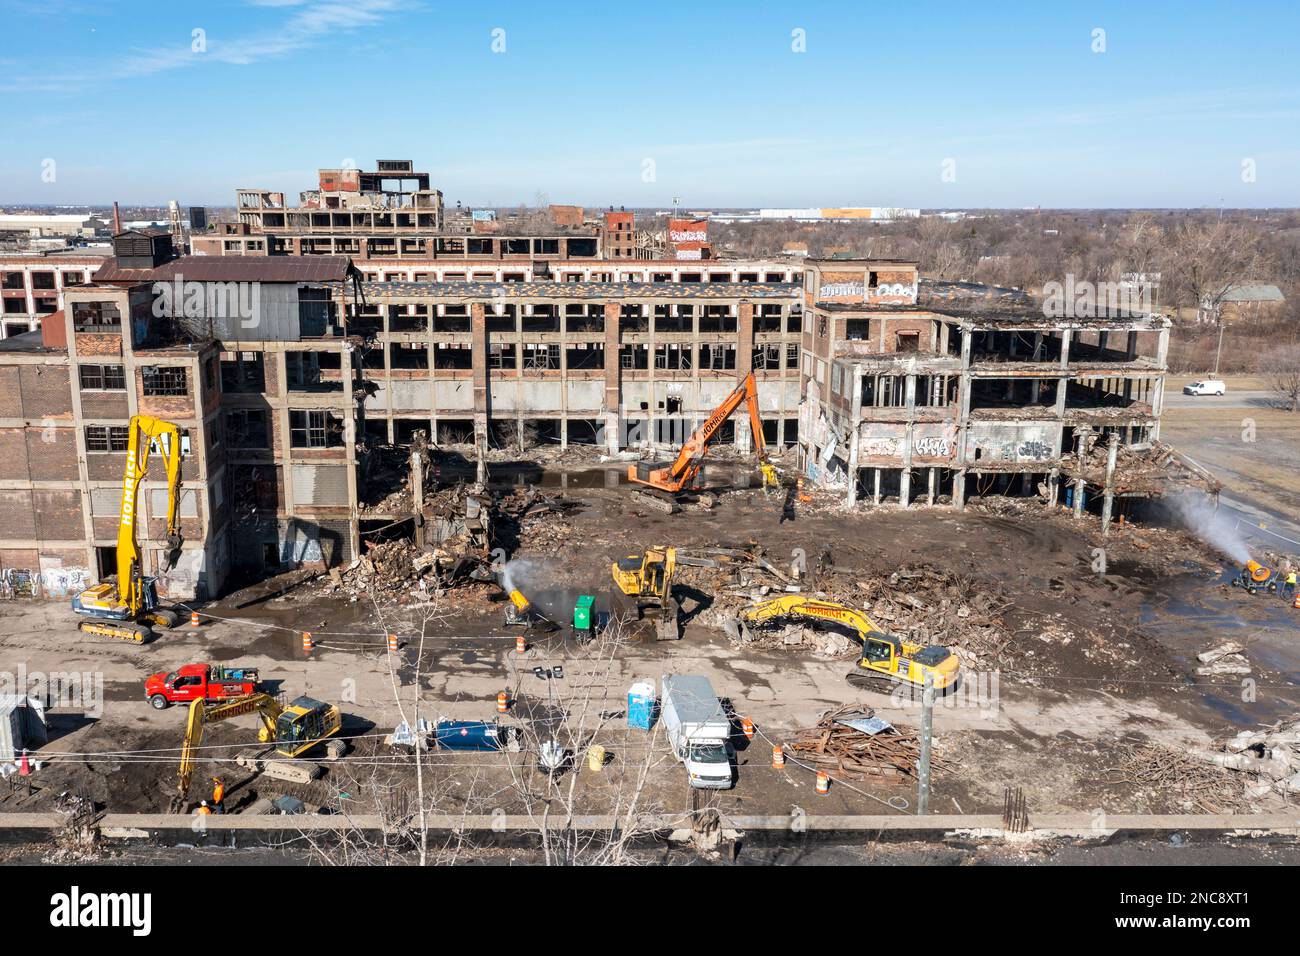 Detroit, Michigan - demolizione di una parte dell'impianto di produzione automobilistica Packard abbandonato. Inaugurato nel 1903, l'impianto di 3,5 milioni di metri quadrati impiegato Foto Stock